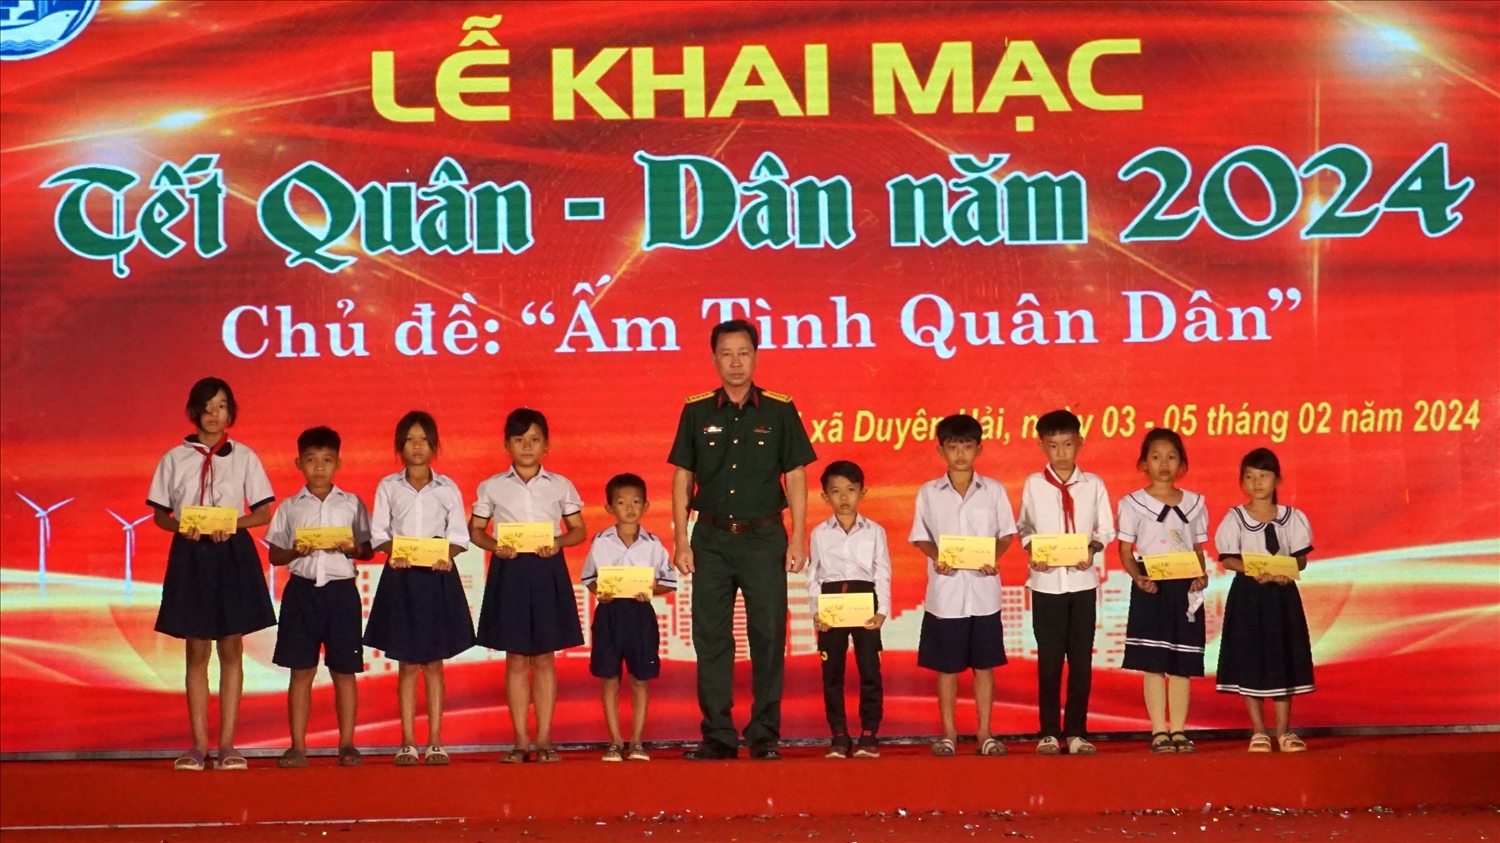 Đại tá Trương Thanh Phong, Chỉ huy trưởng Bộ Chỉ huy quân sự tỉnh Trà Vinh trao 10 suốt học bổng do sự đóng góp của cán bộ, chiến sĩ trong đơn vị cho các cháu có hoàn cảnh khó khăn